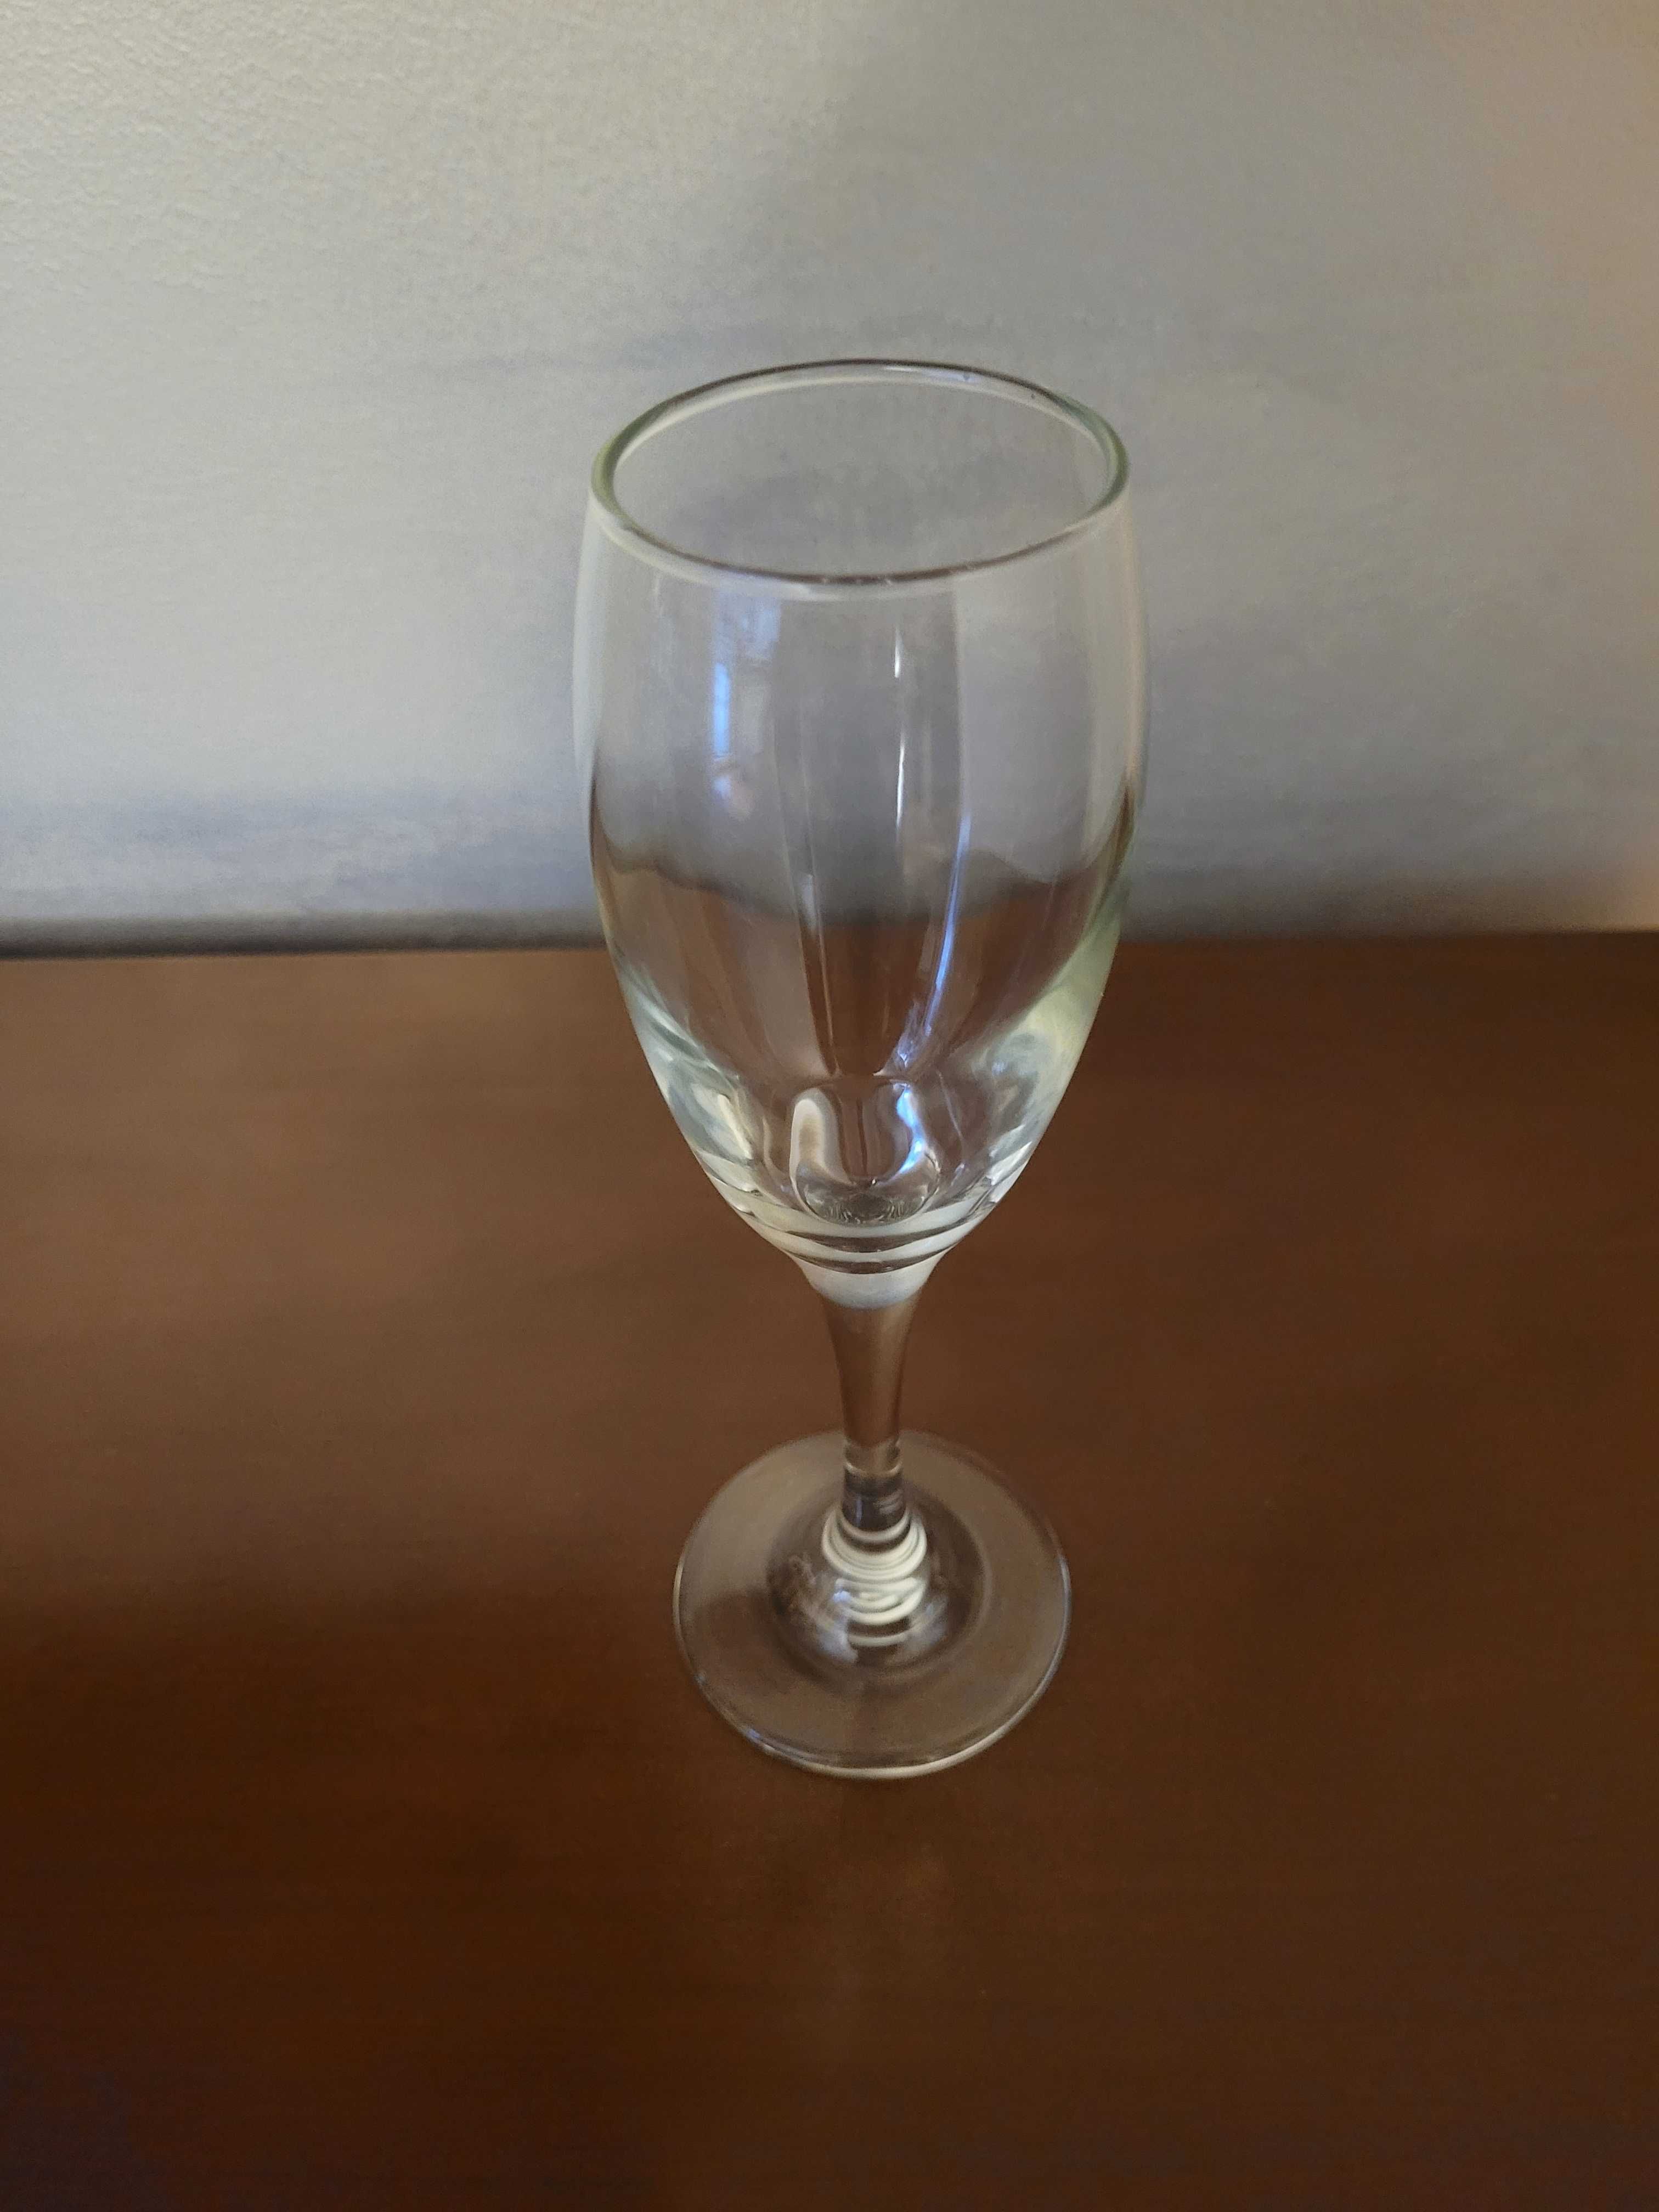 Kieliszek do szampana 200 mm wysoki 50 mm średnica szkło szklany